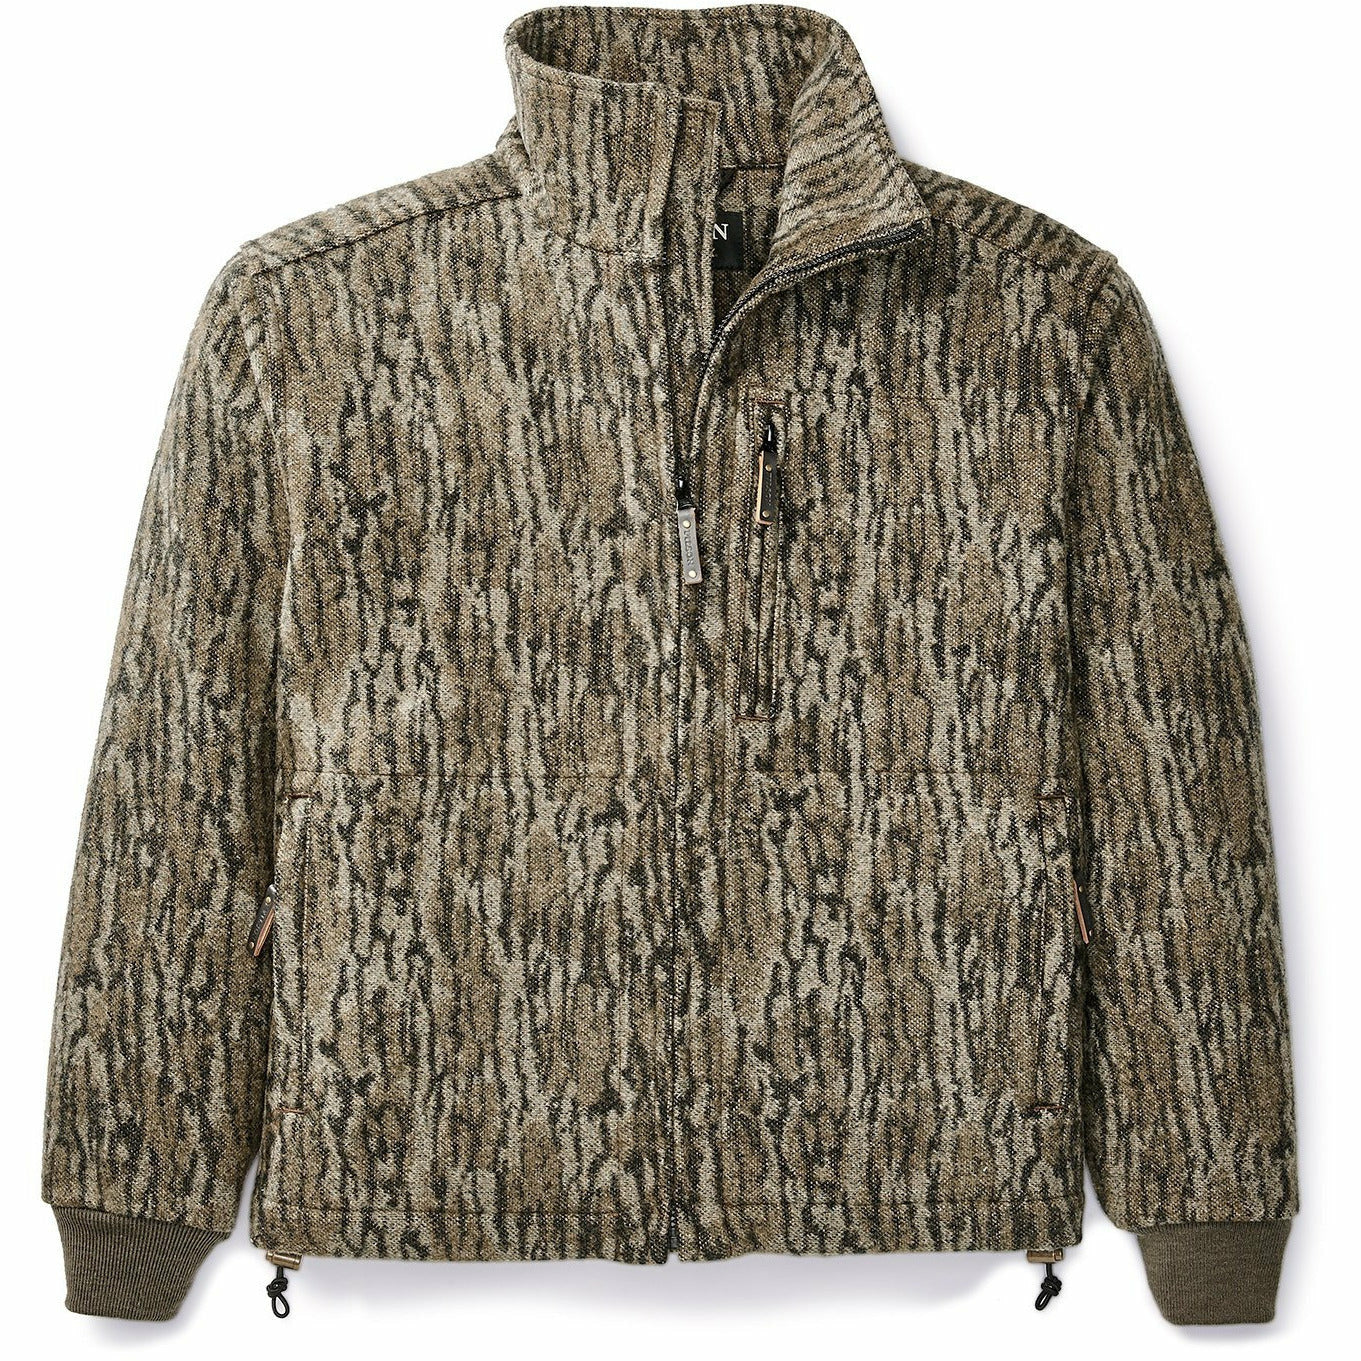 Camo Mackinaw Wool Field Jacket